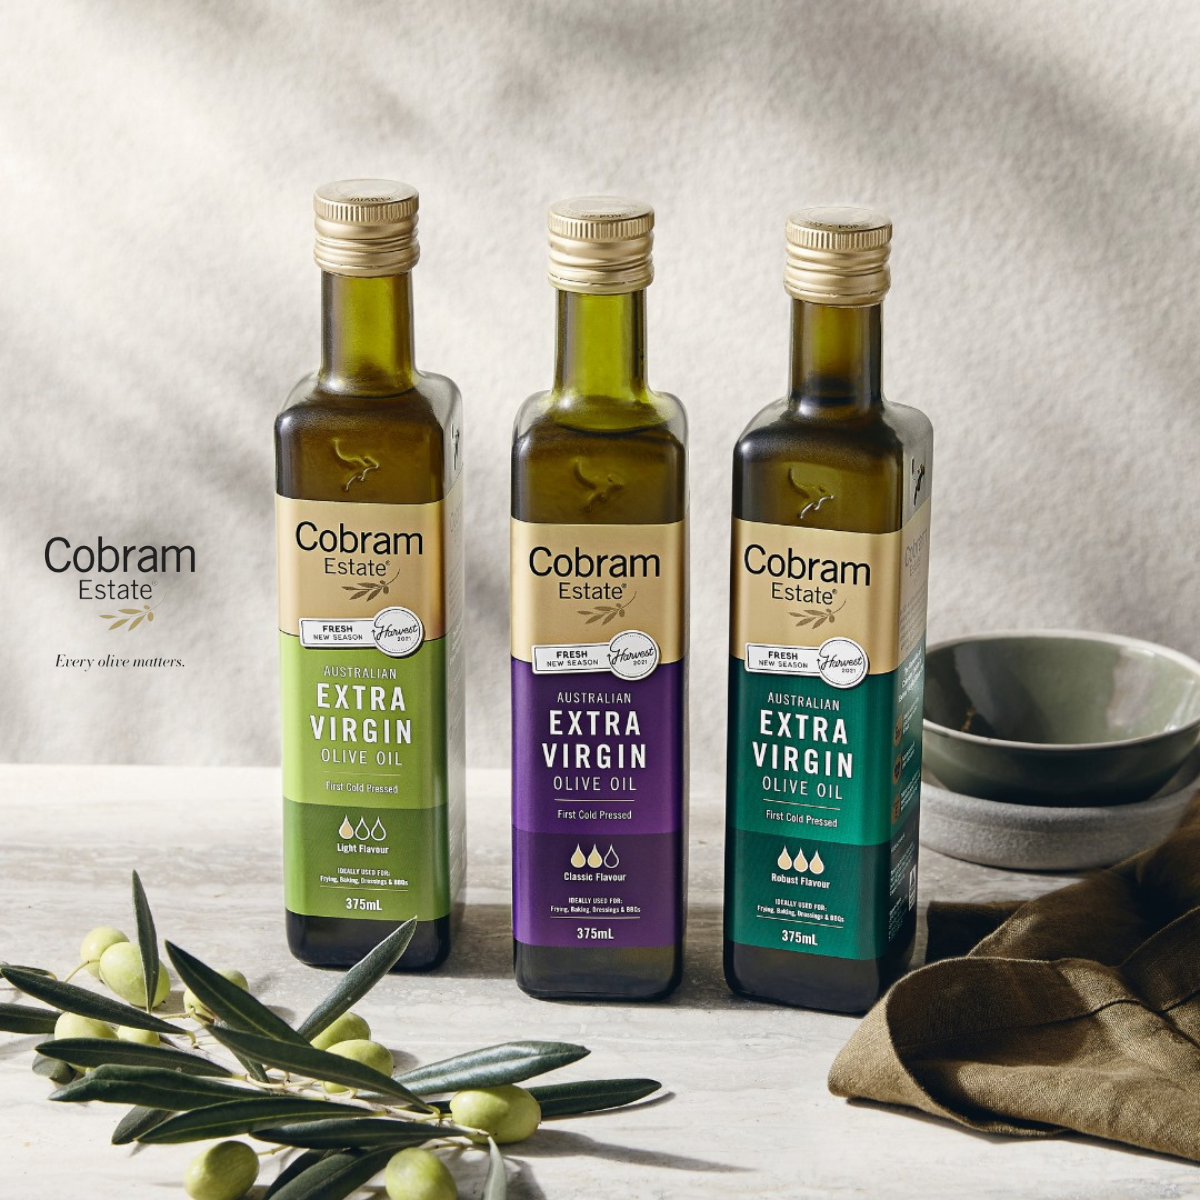 Cobram Estate Robust Extra Virgin Olive Oil